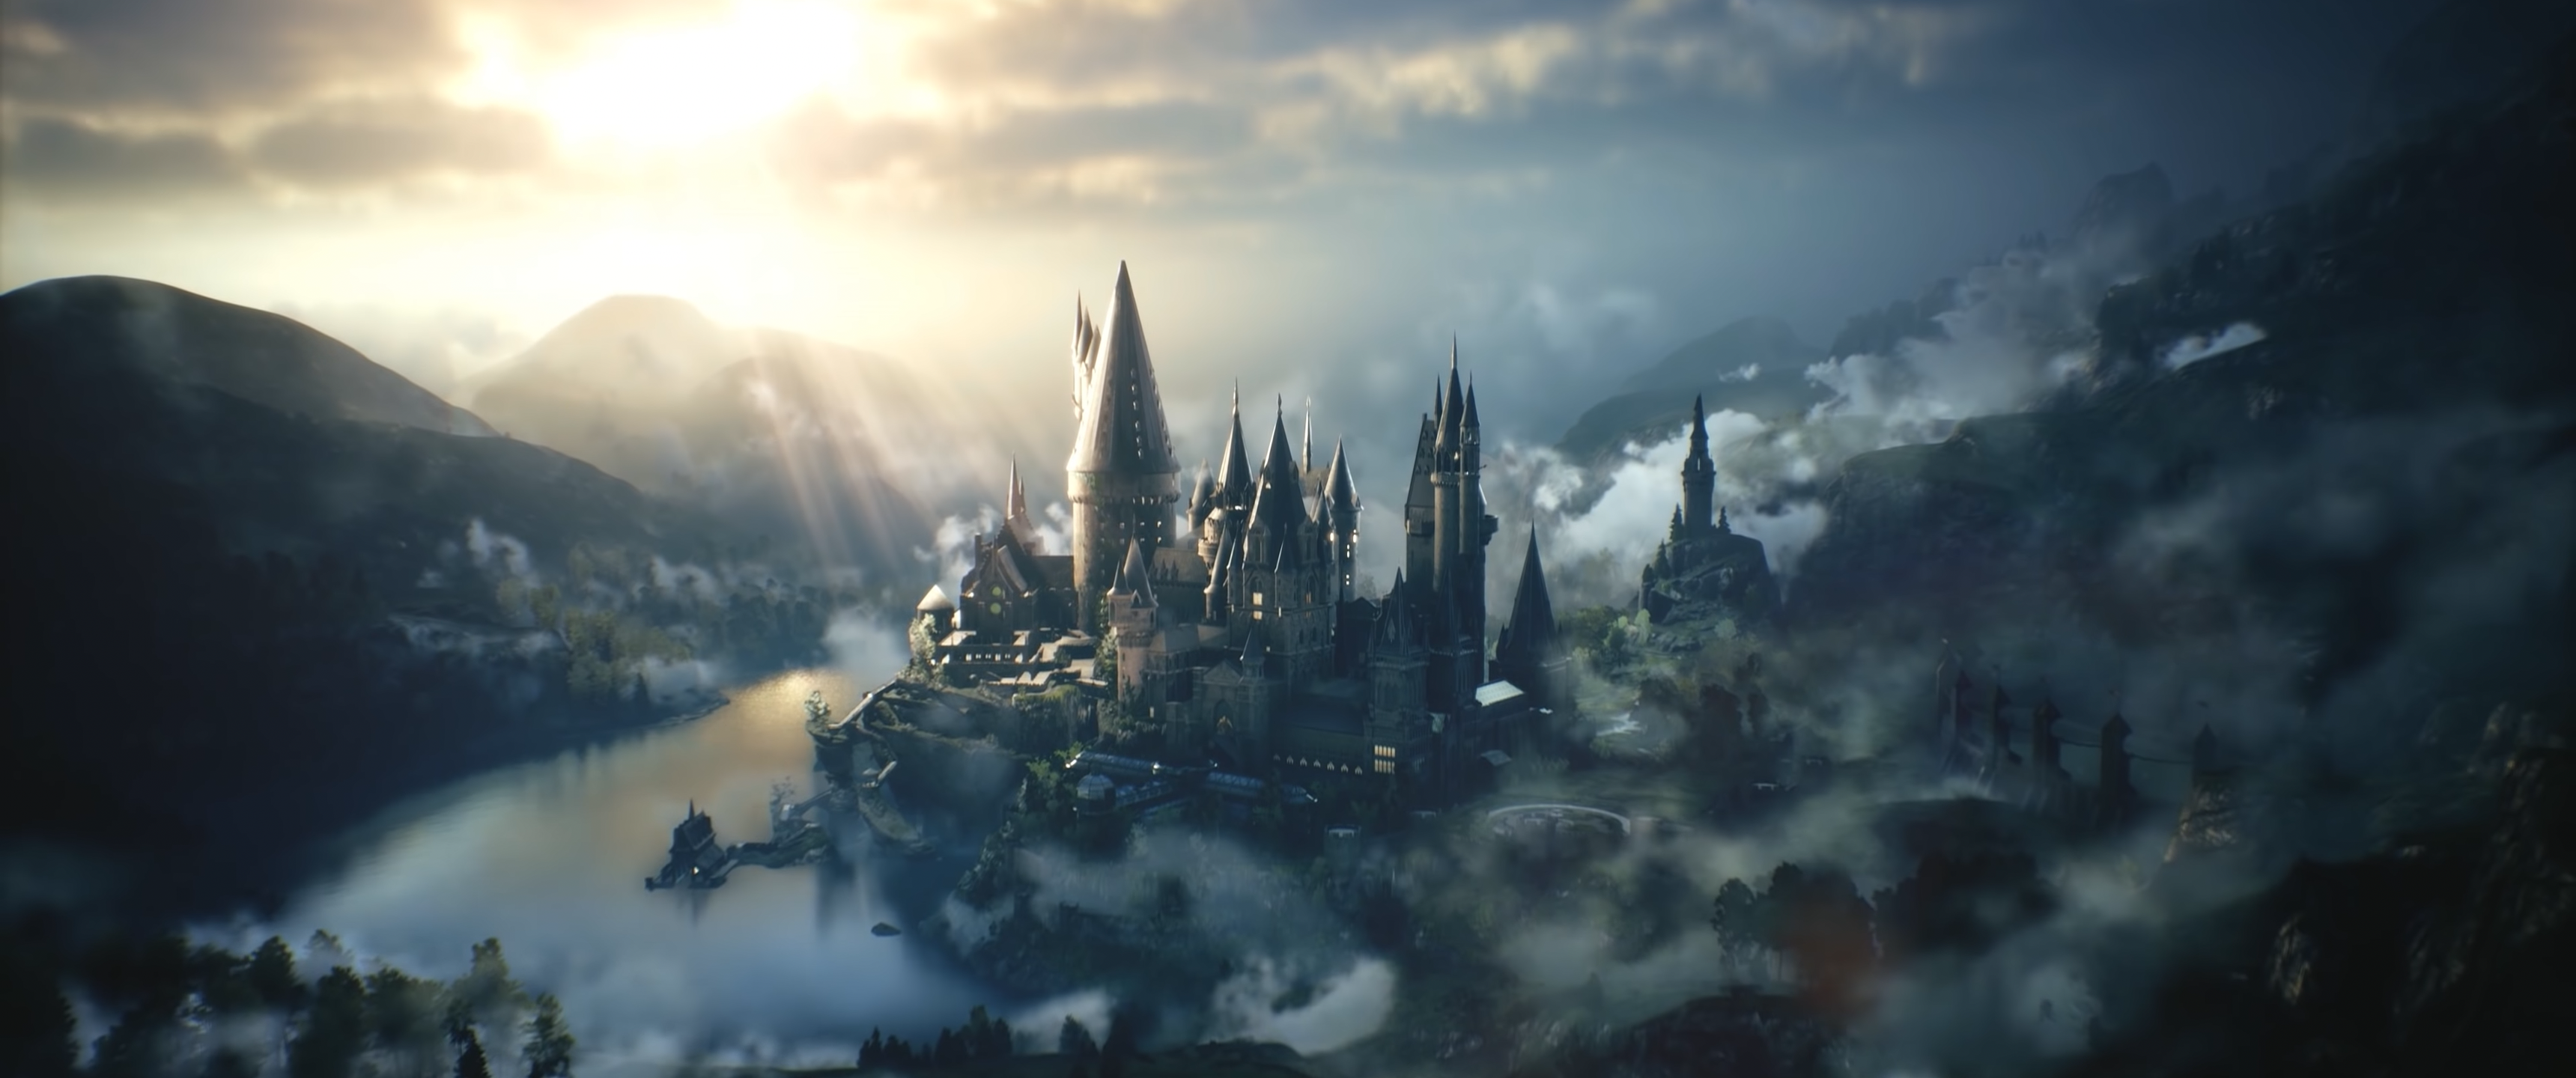 Hogwarts Legacy UltraWide 219 wallpapers or desktop backgrounds